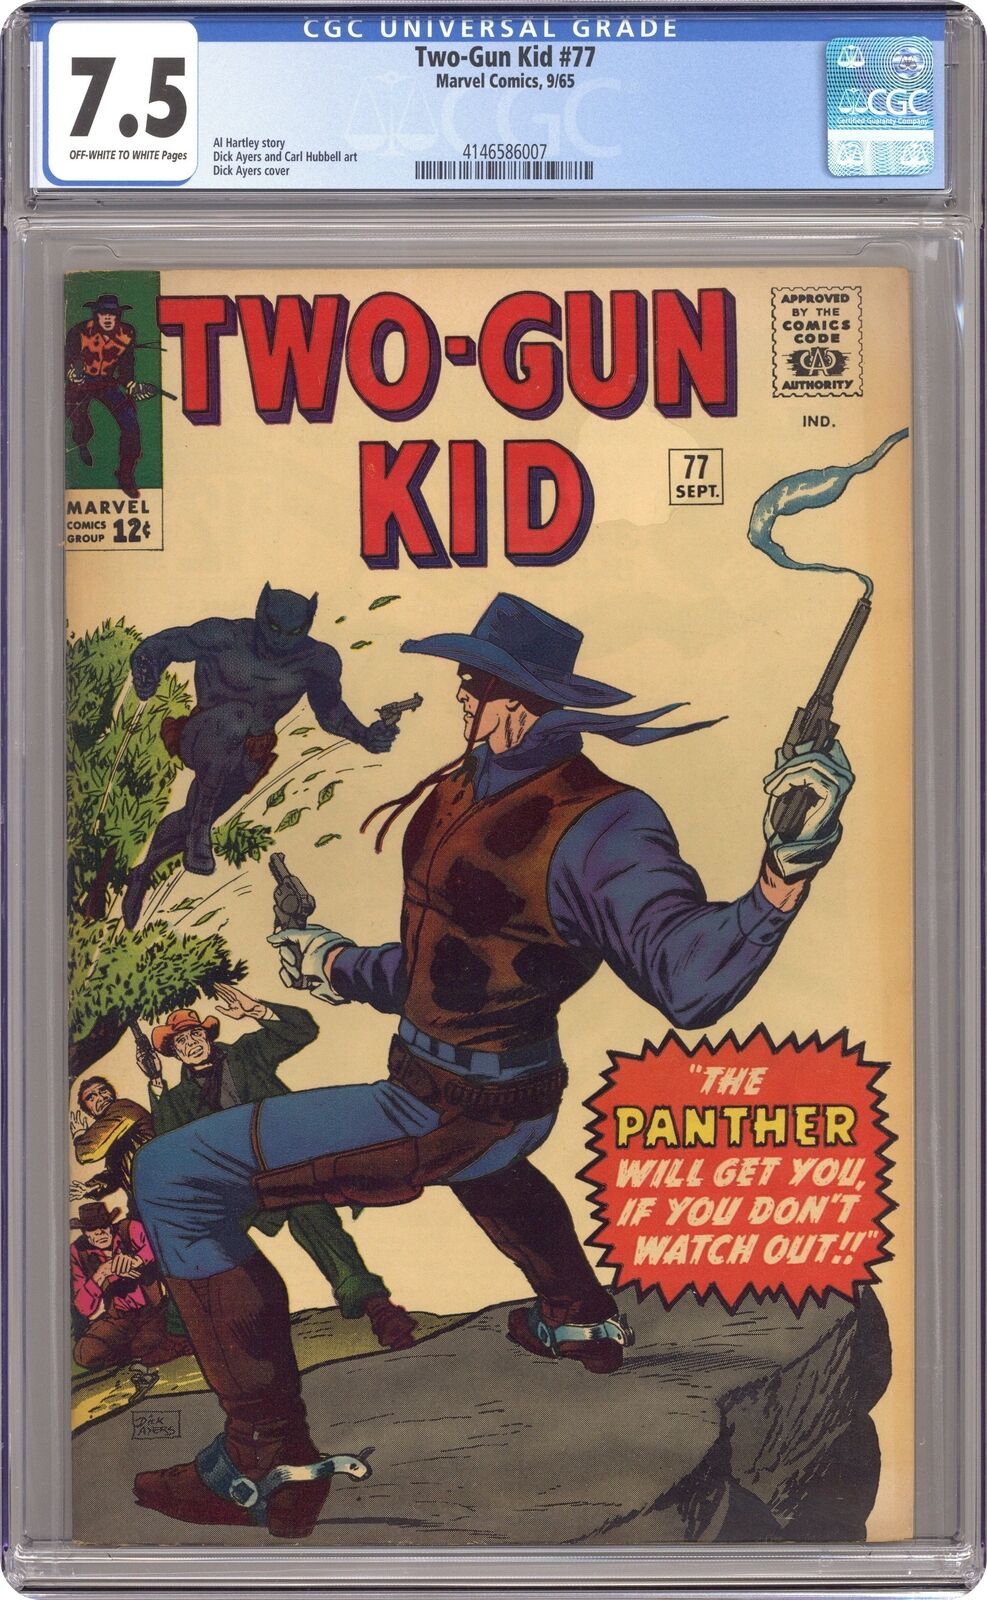 Two-Gun Kid #77 CGC 7.5 1965 4146586007